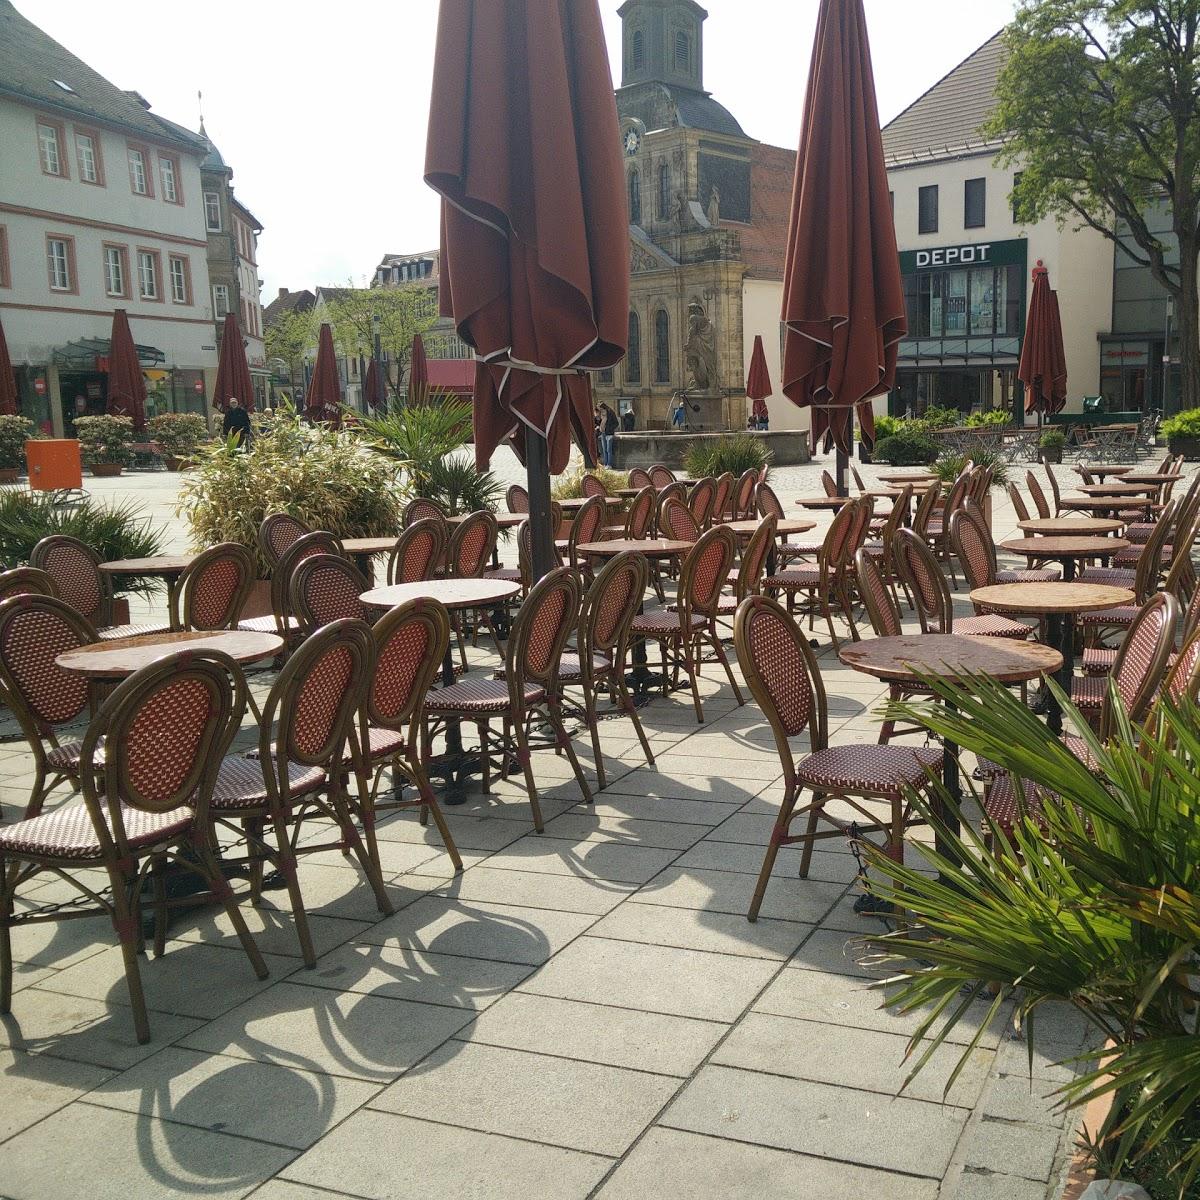 Restaurant "Caffè Bar Rossi italienisches Café" in Bayreuth